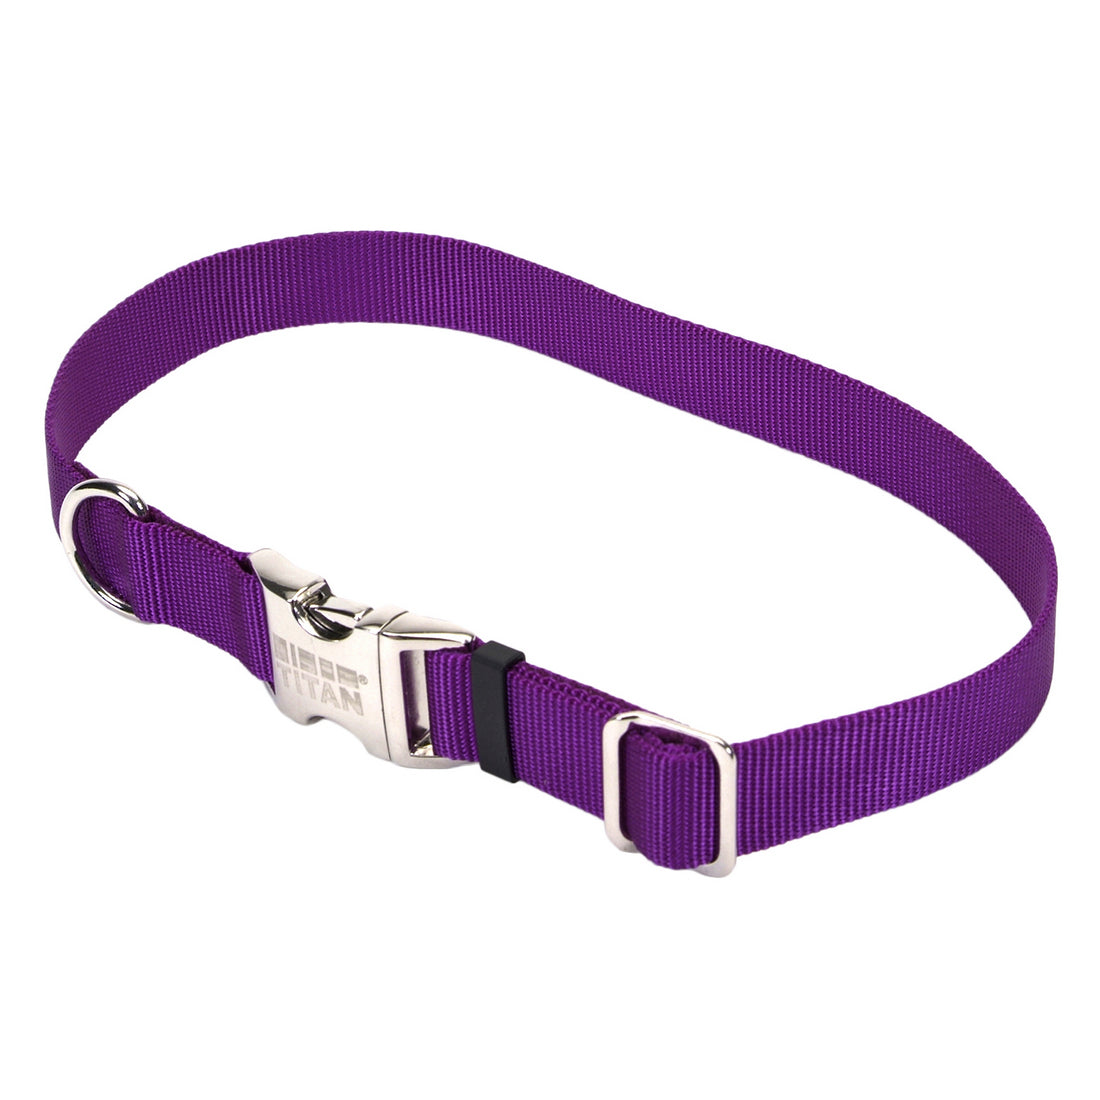 Coastal Adjustable Nylon Collar with Metal Buckle Large Purple